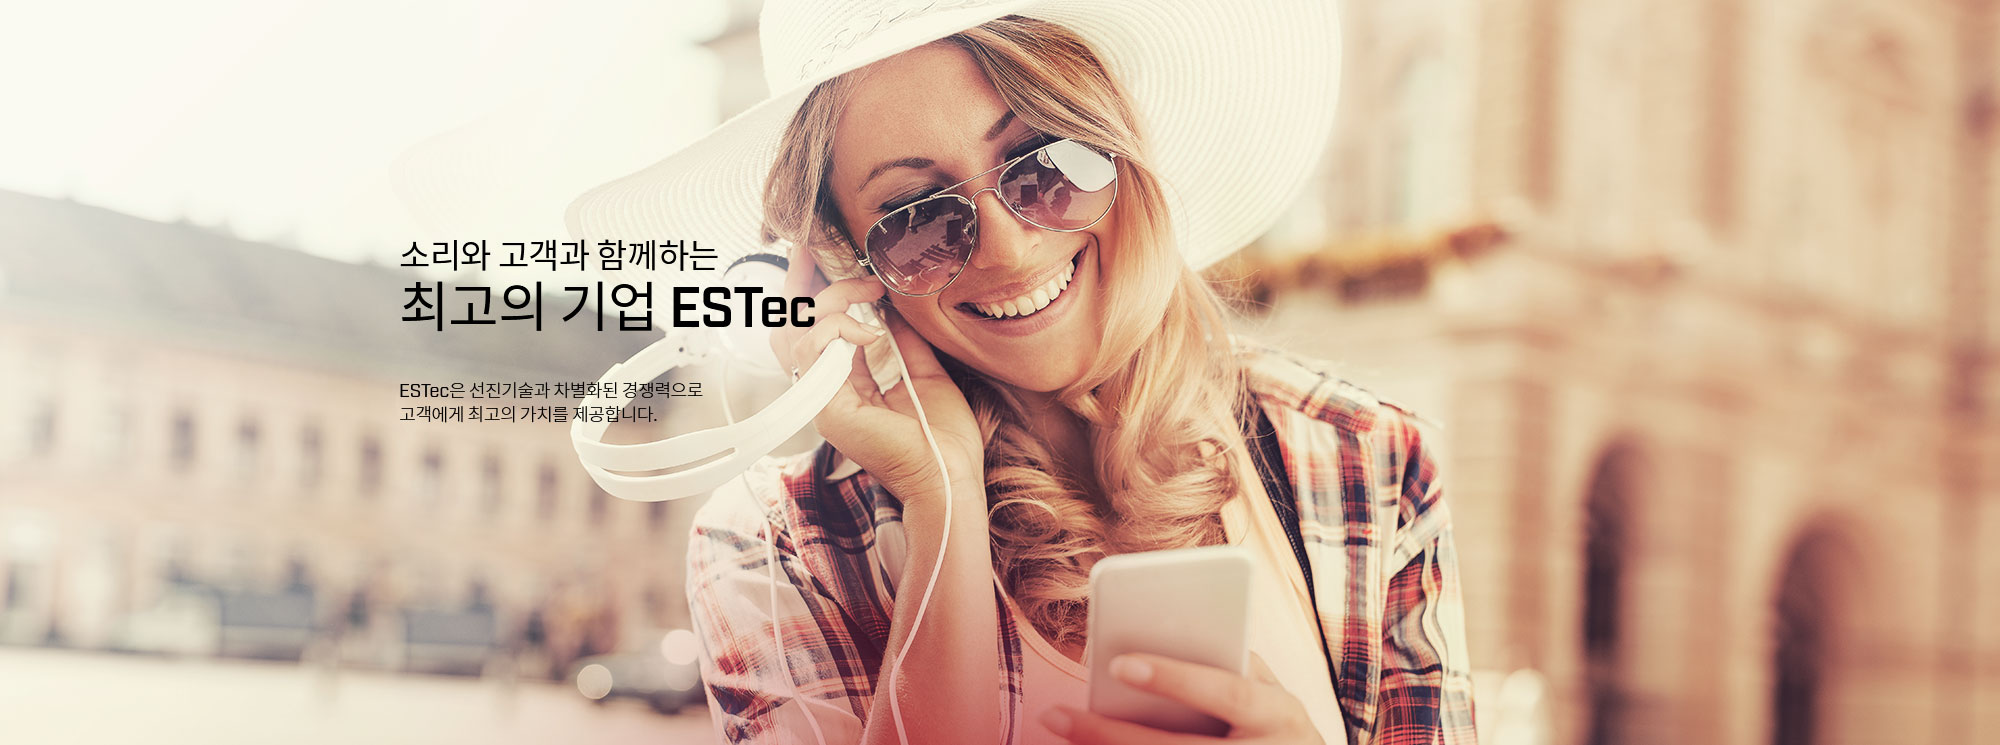 소리와 고객과 함께하는 최고의 기업 ESTec ESTec은 선진기술과 차별화된 경쟁력으로 고객에게 최고의 가치를 제공합니다.